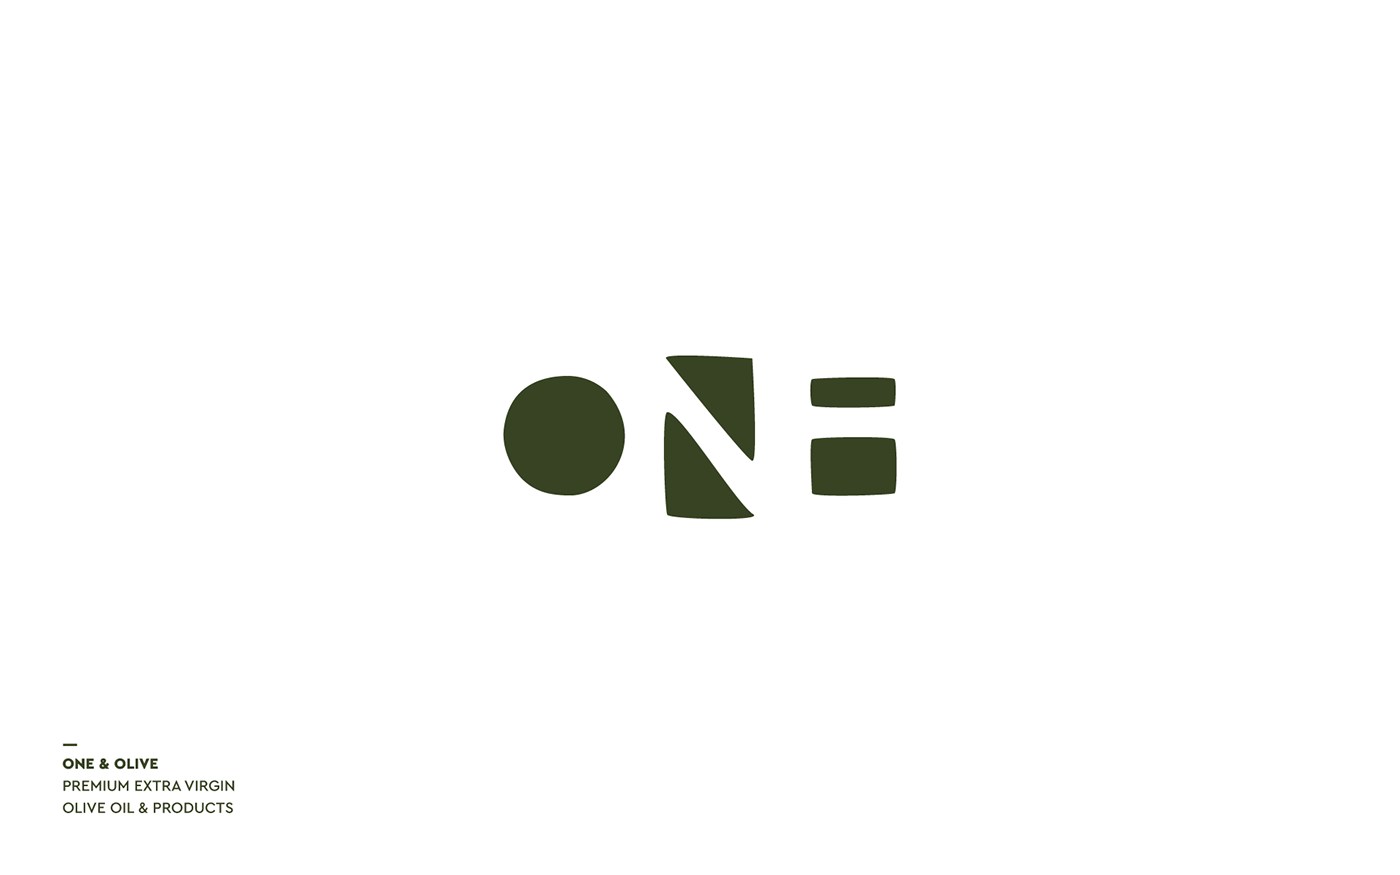 Logotype logo symbol mark brand identity